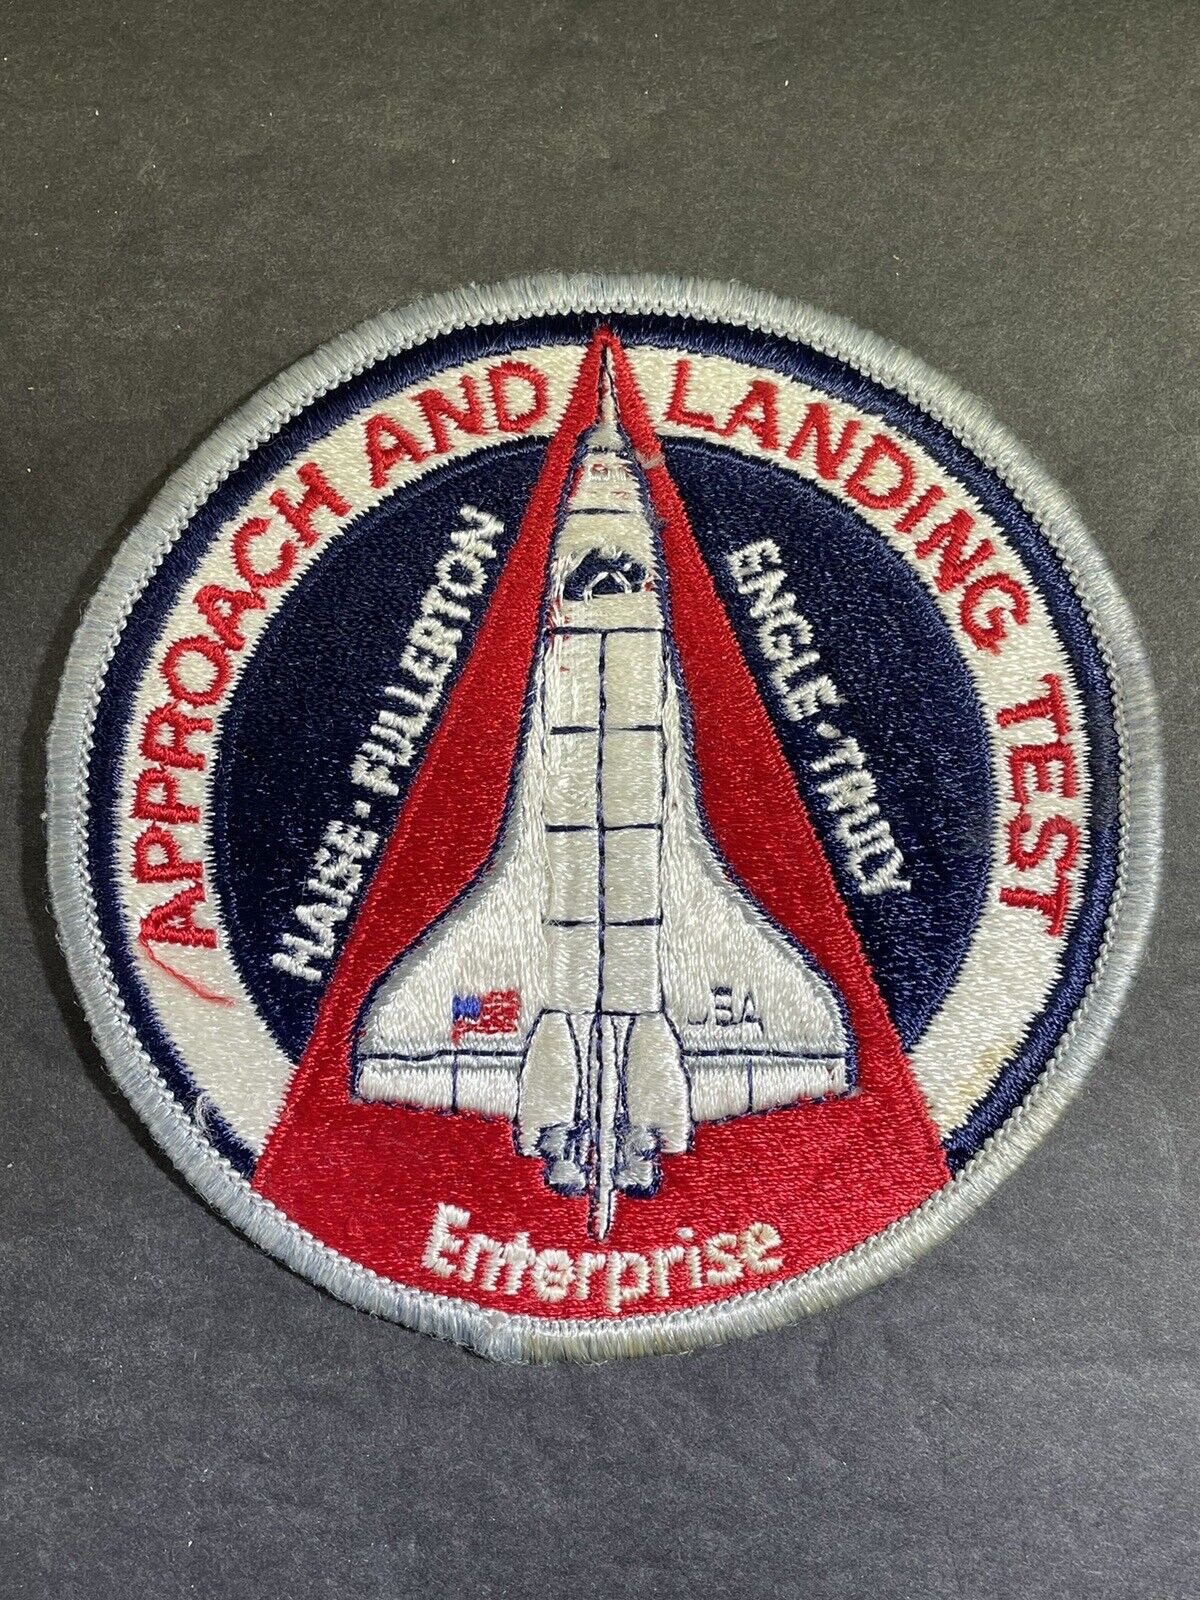 ALT Approach And Landing Test Original A-B Emblem Enterprise NASA Shuttle Patch